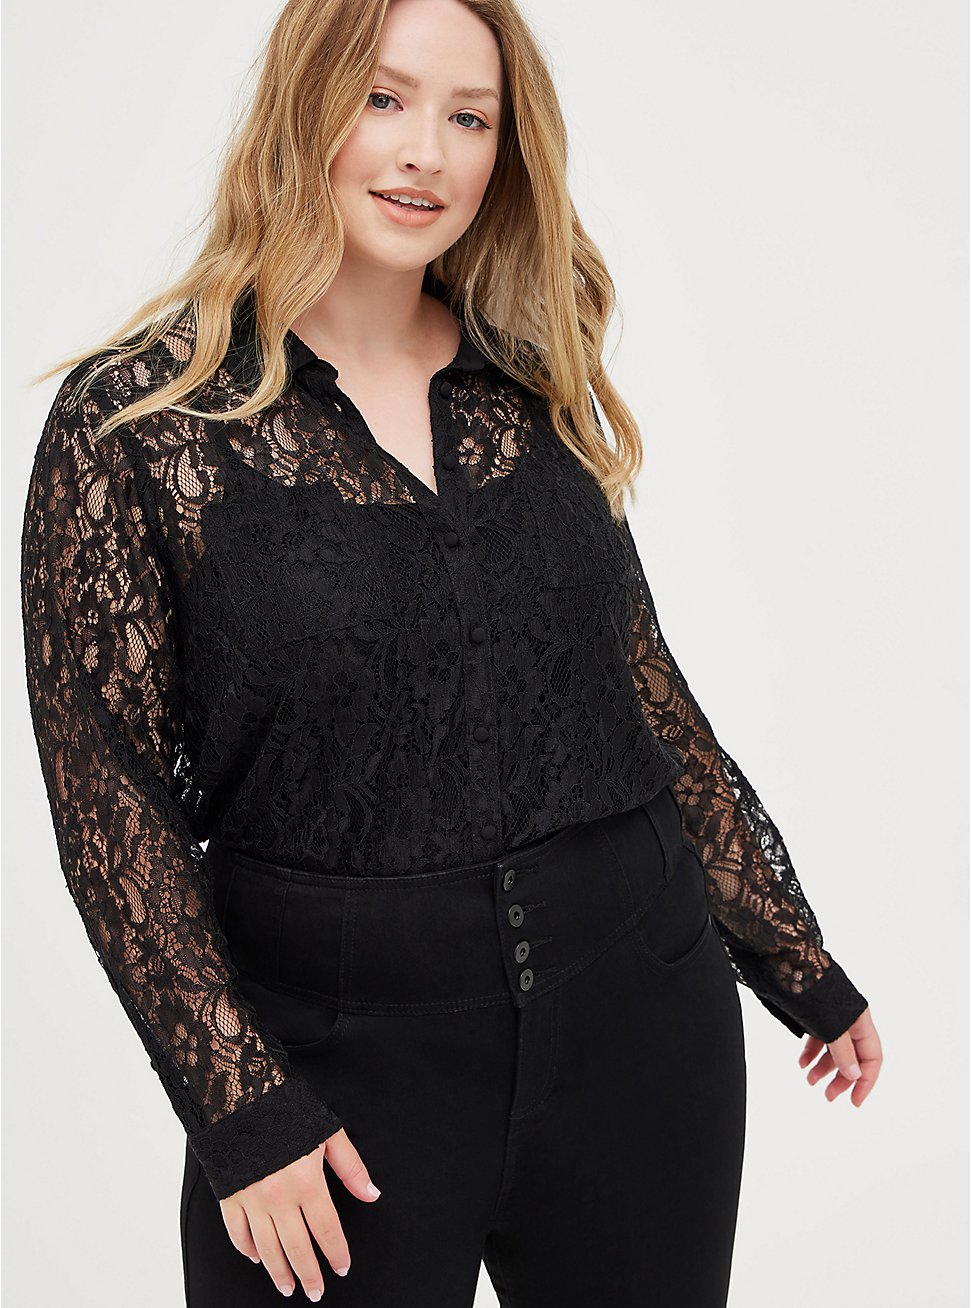 Plus Size Button Front Madison Blouse - Sheer Lace Black, DEEP BLACK, hi-res